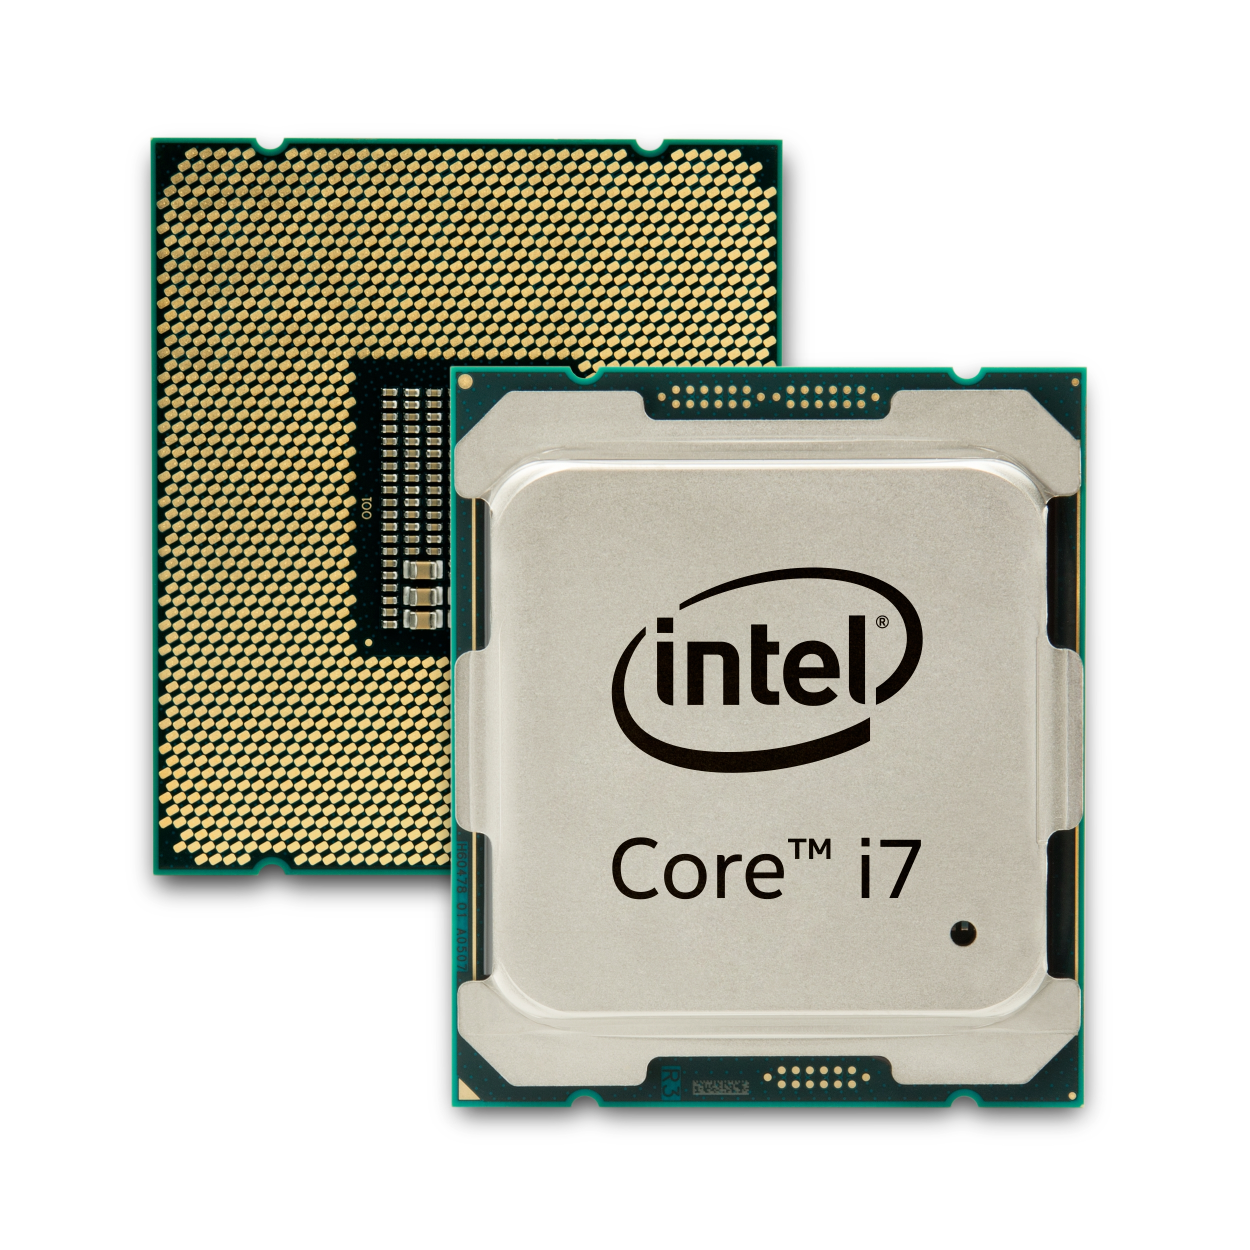 Intel prosperuje dzięki PC